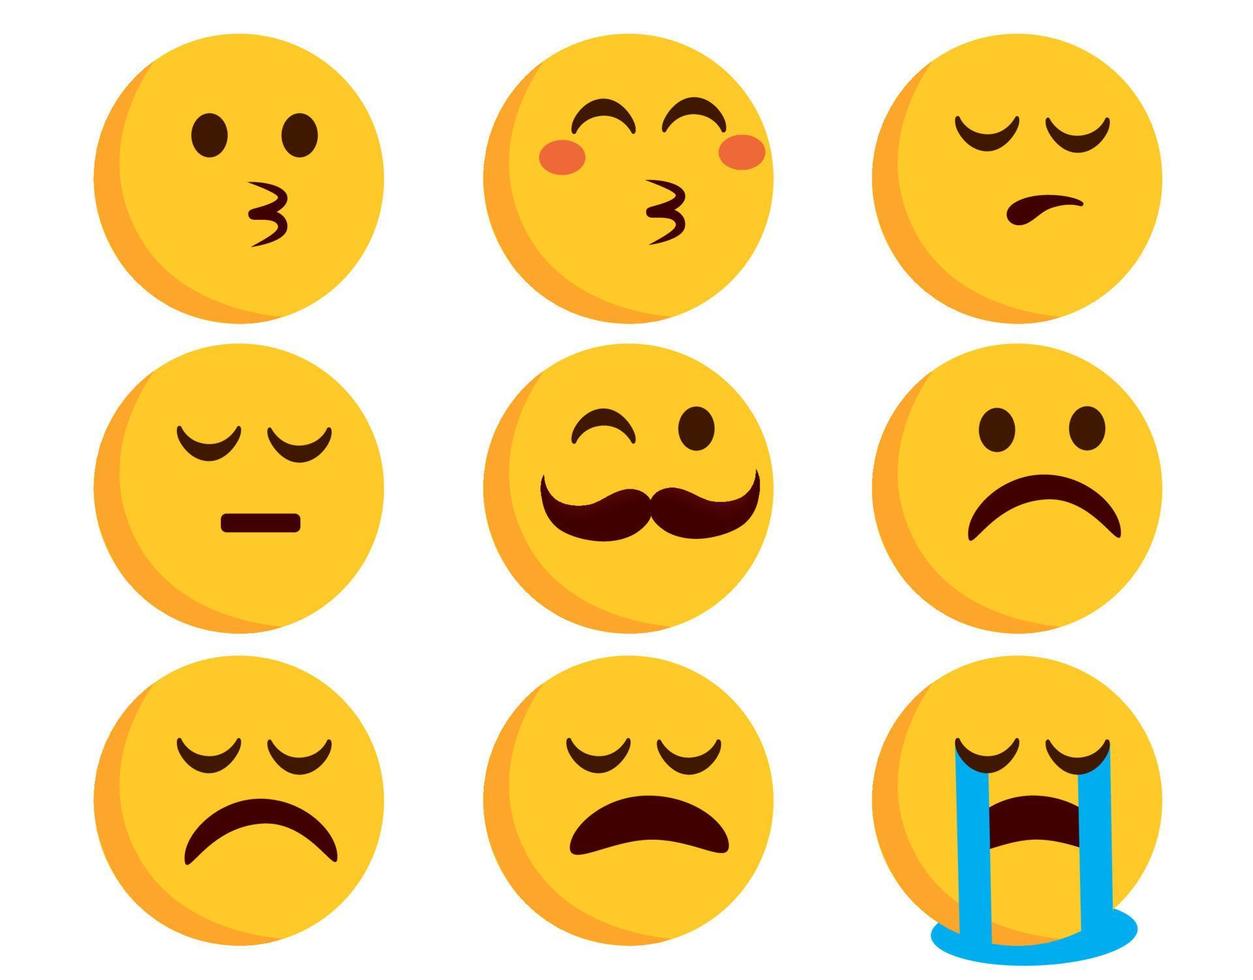 emojis platt uttryckssymbol vektor set. uttryckssymboler i kyssande, gråtande och ledsna humöruttryck isolerade i vit bakgrund för emoji-karaktärsdesign. vektor illustration.